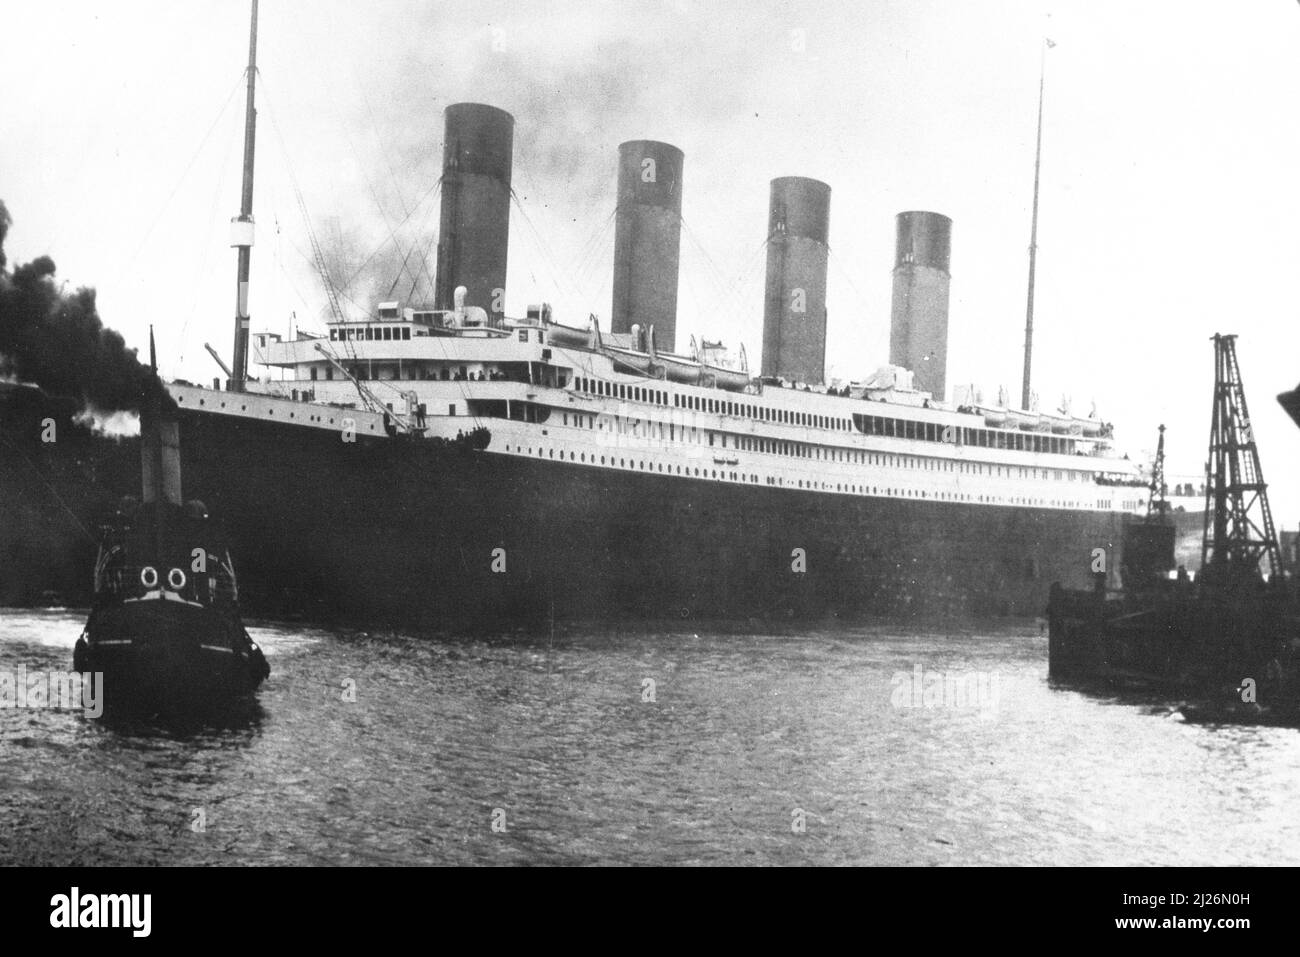 Photographie vintage du navire Titanic vu à Southampton à partir de son dernier voyage, 1912, Southampton Royaume-Uni Banque D'Images